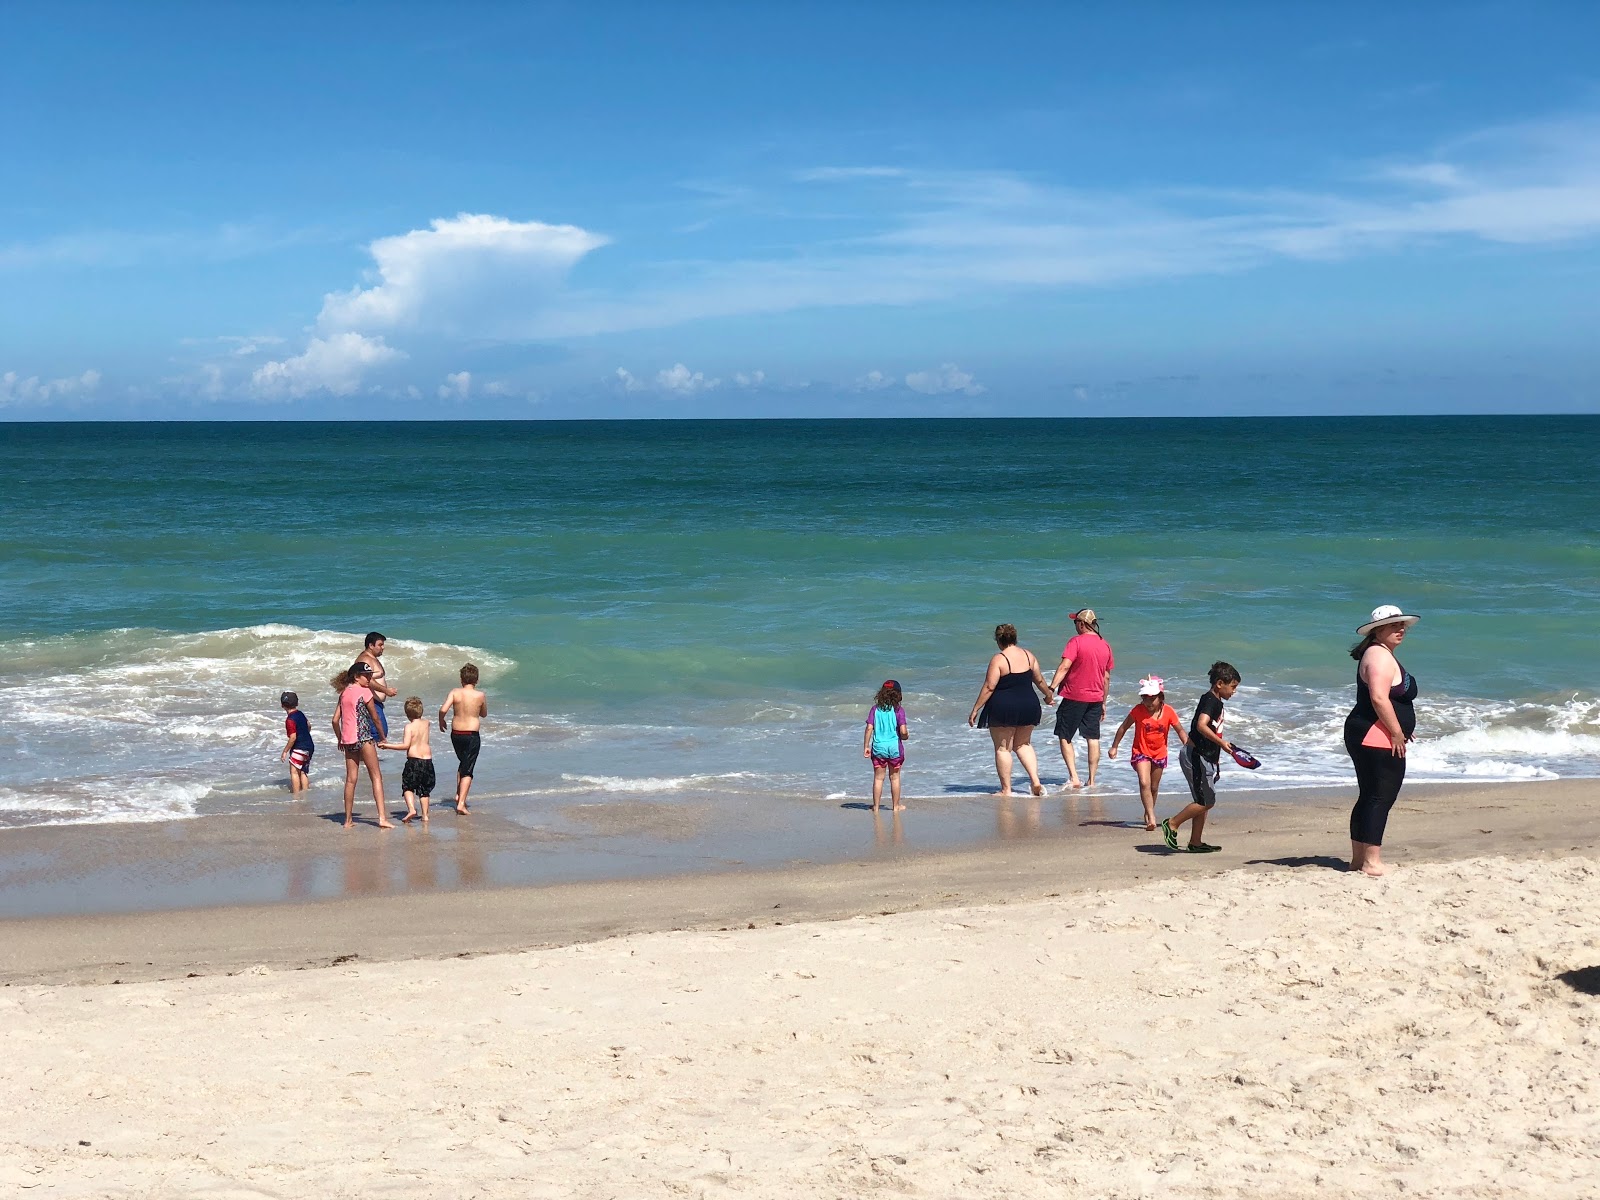 Vero beach'in fotoğrafı - rahatlamayı sevenler arasında popüler bir yer